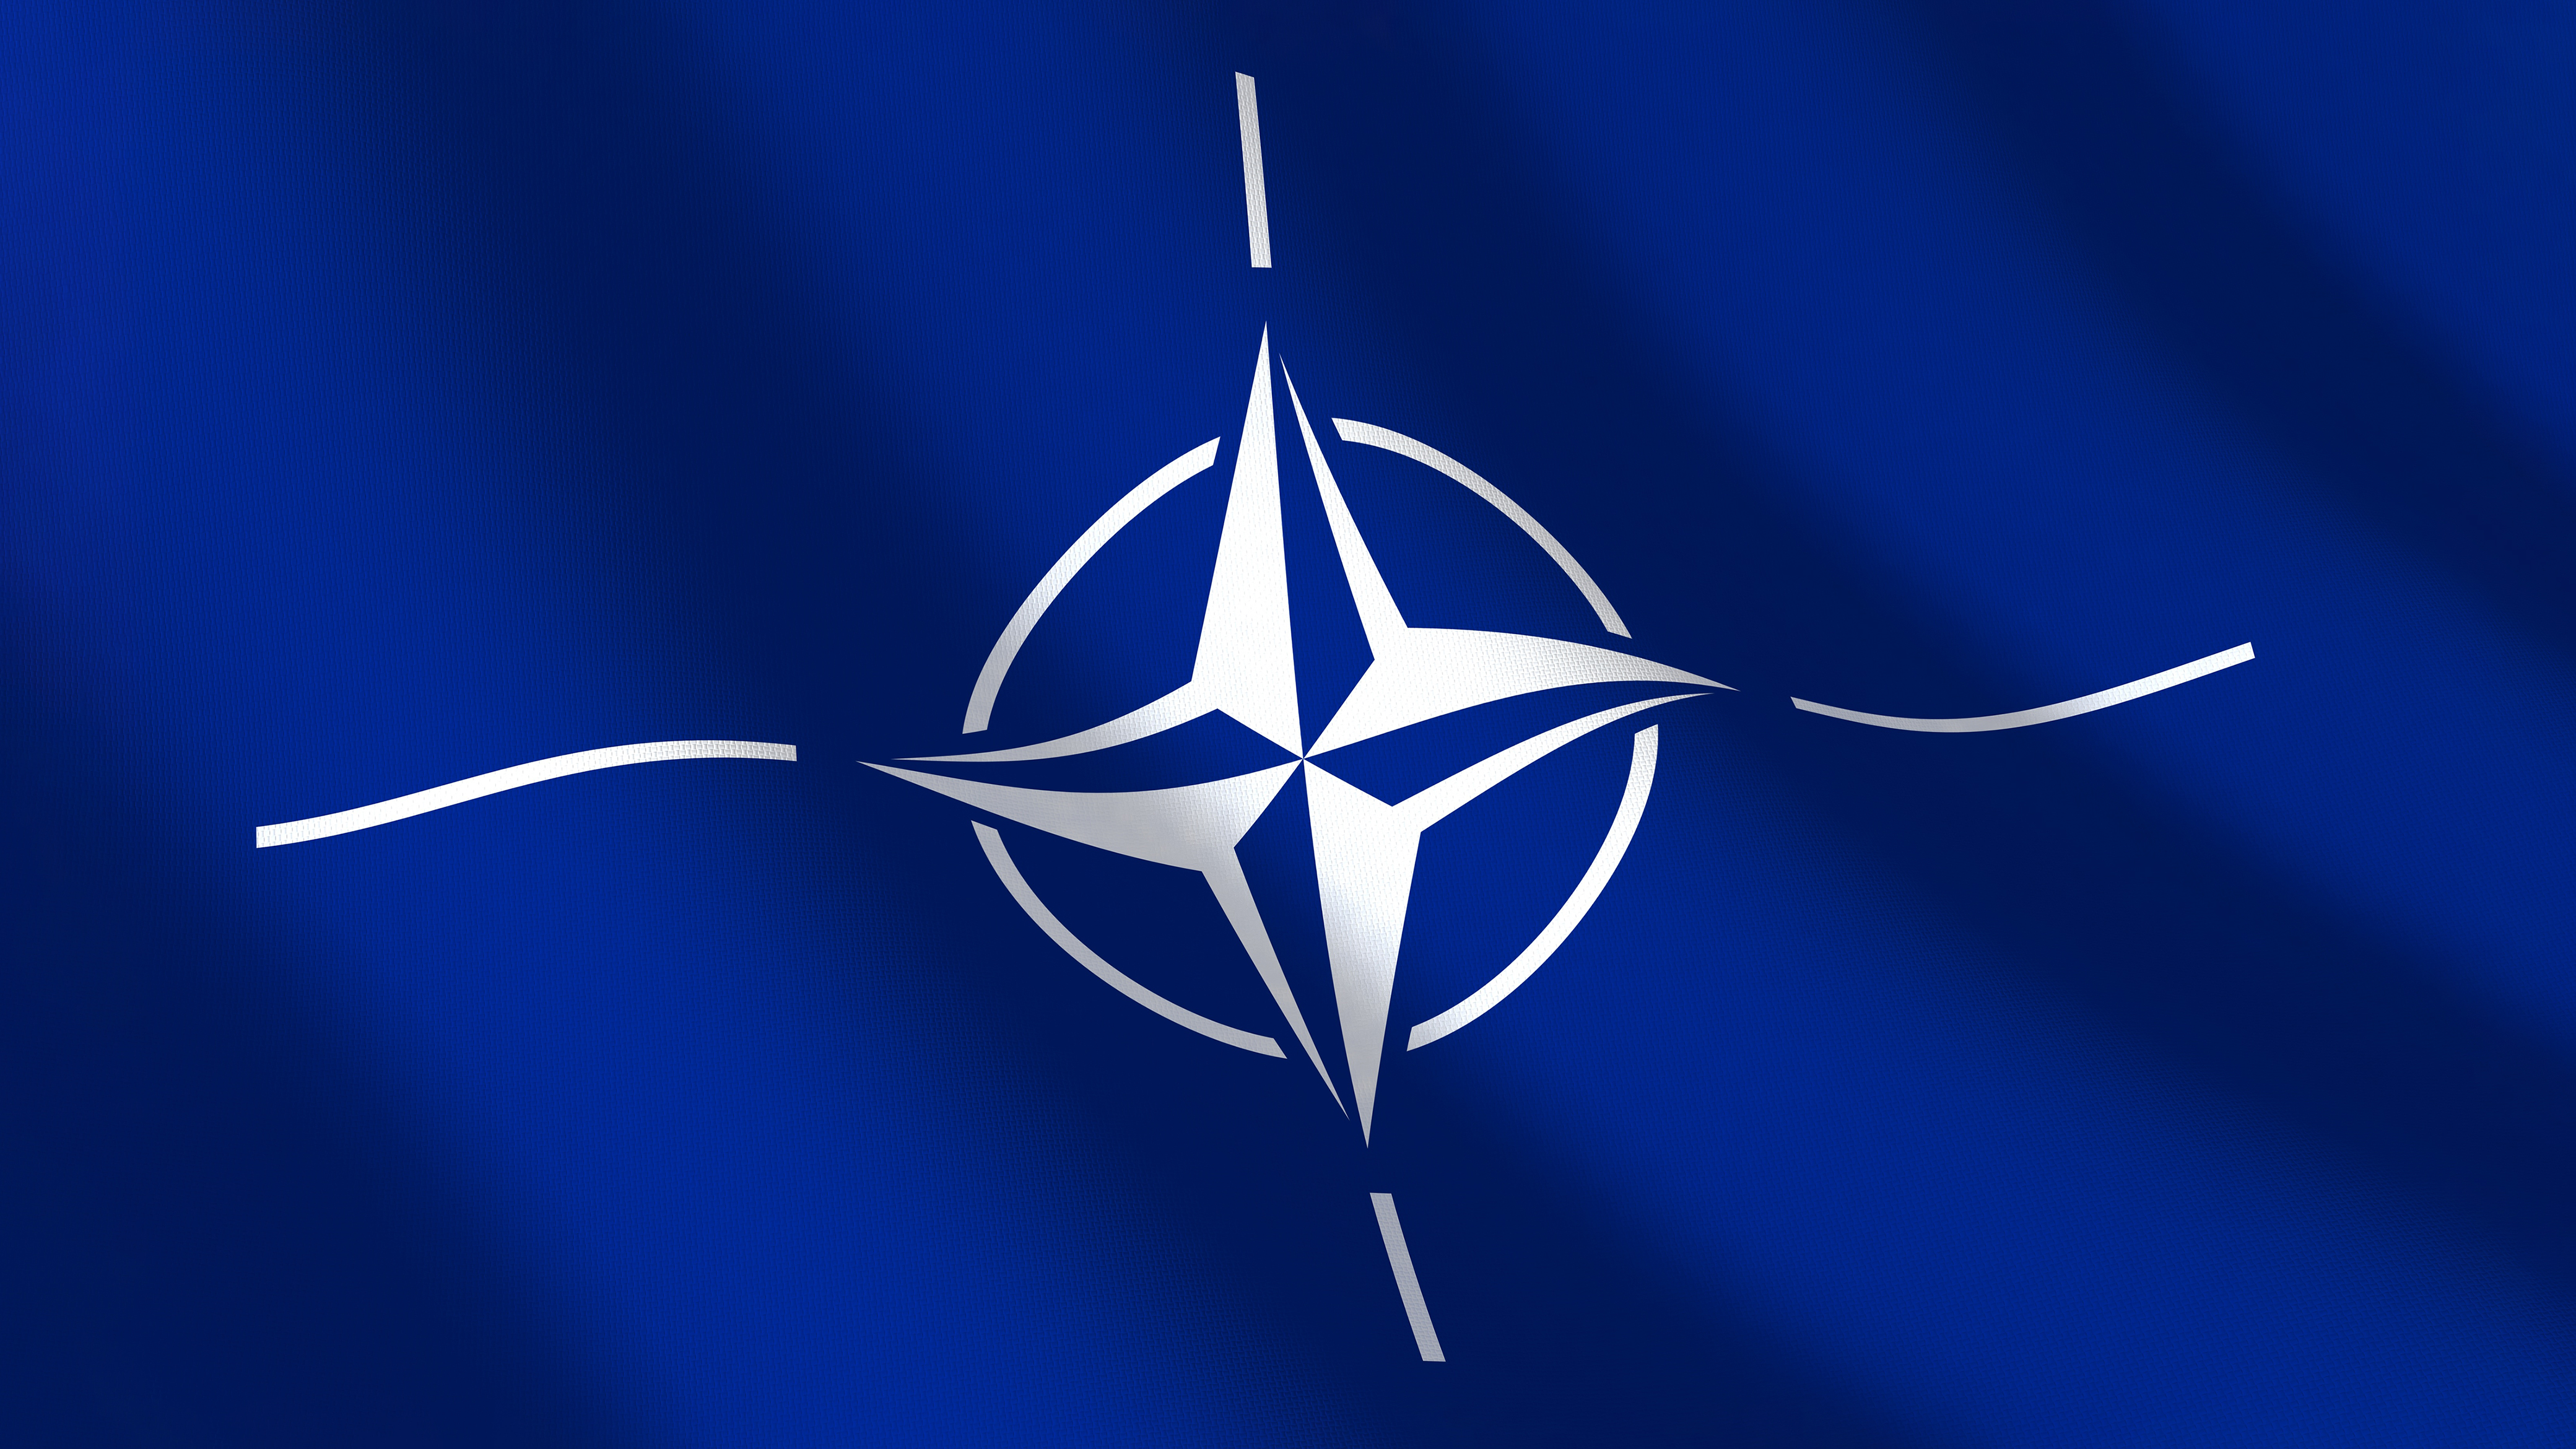 Următorul şef al NATO ar putea fi o femeie. Ce nume sunt prefigurate